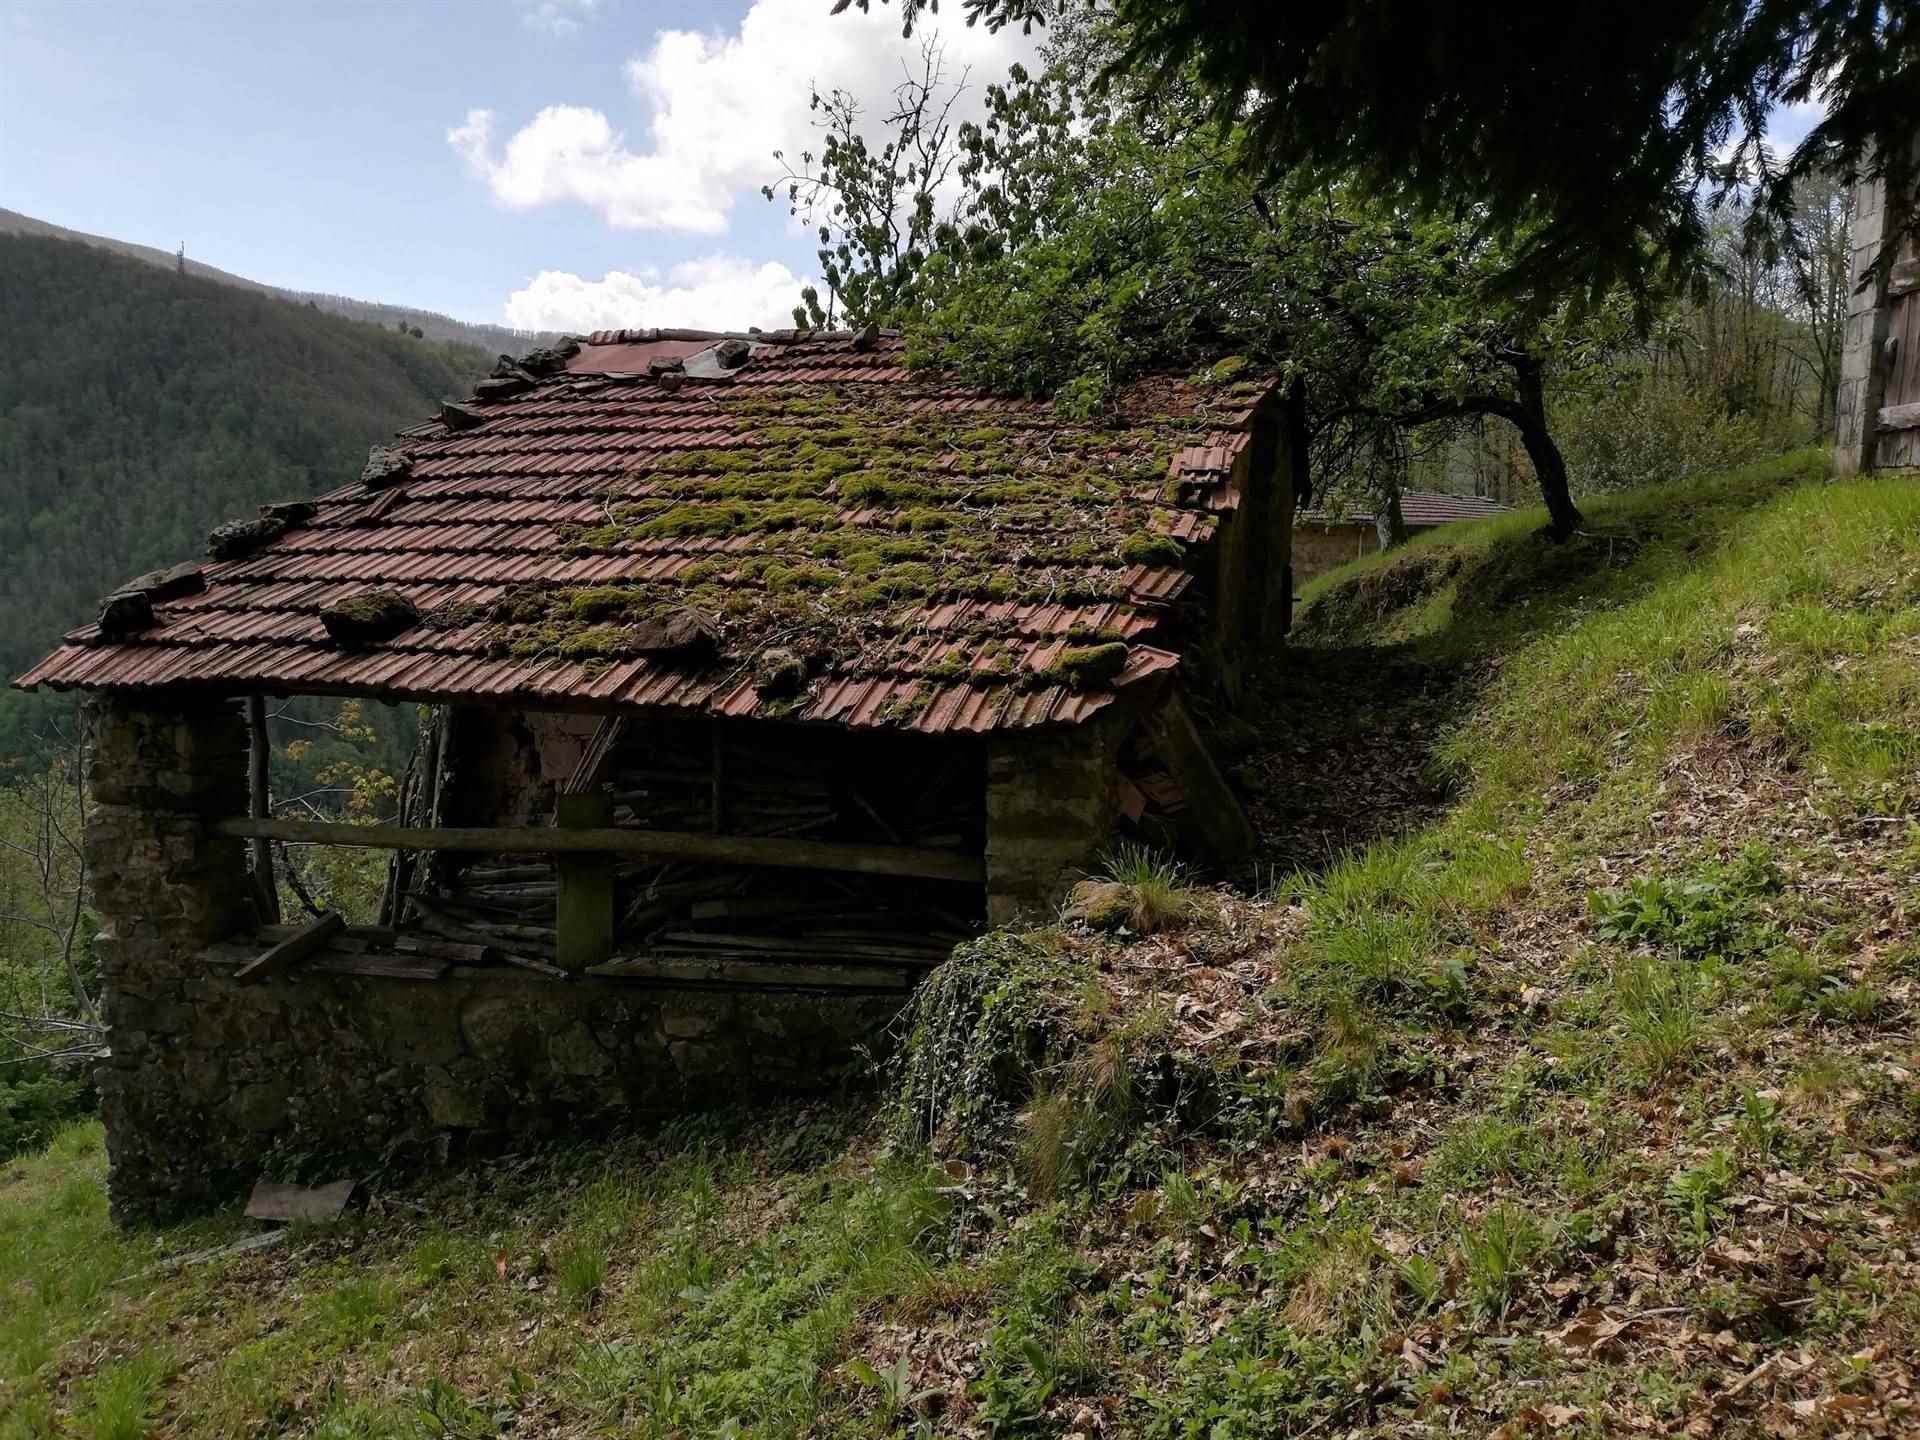 Gli annessi/capanna - The outbuildings / hut